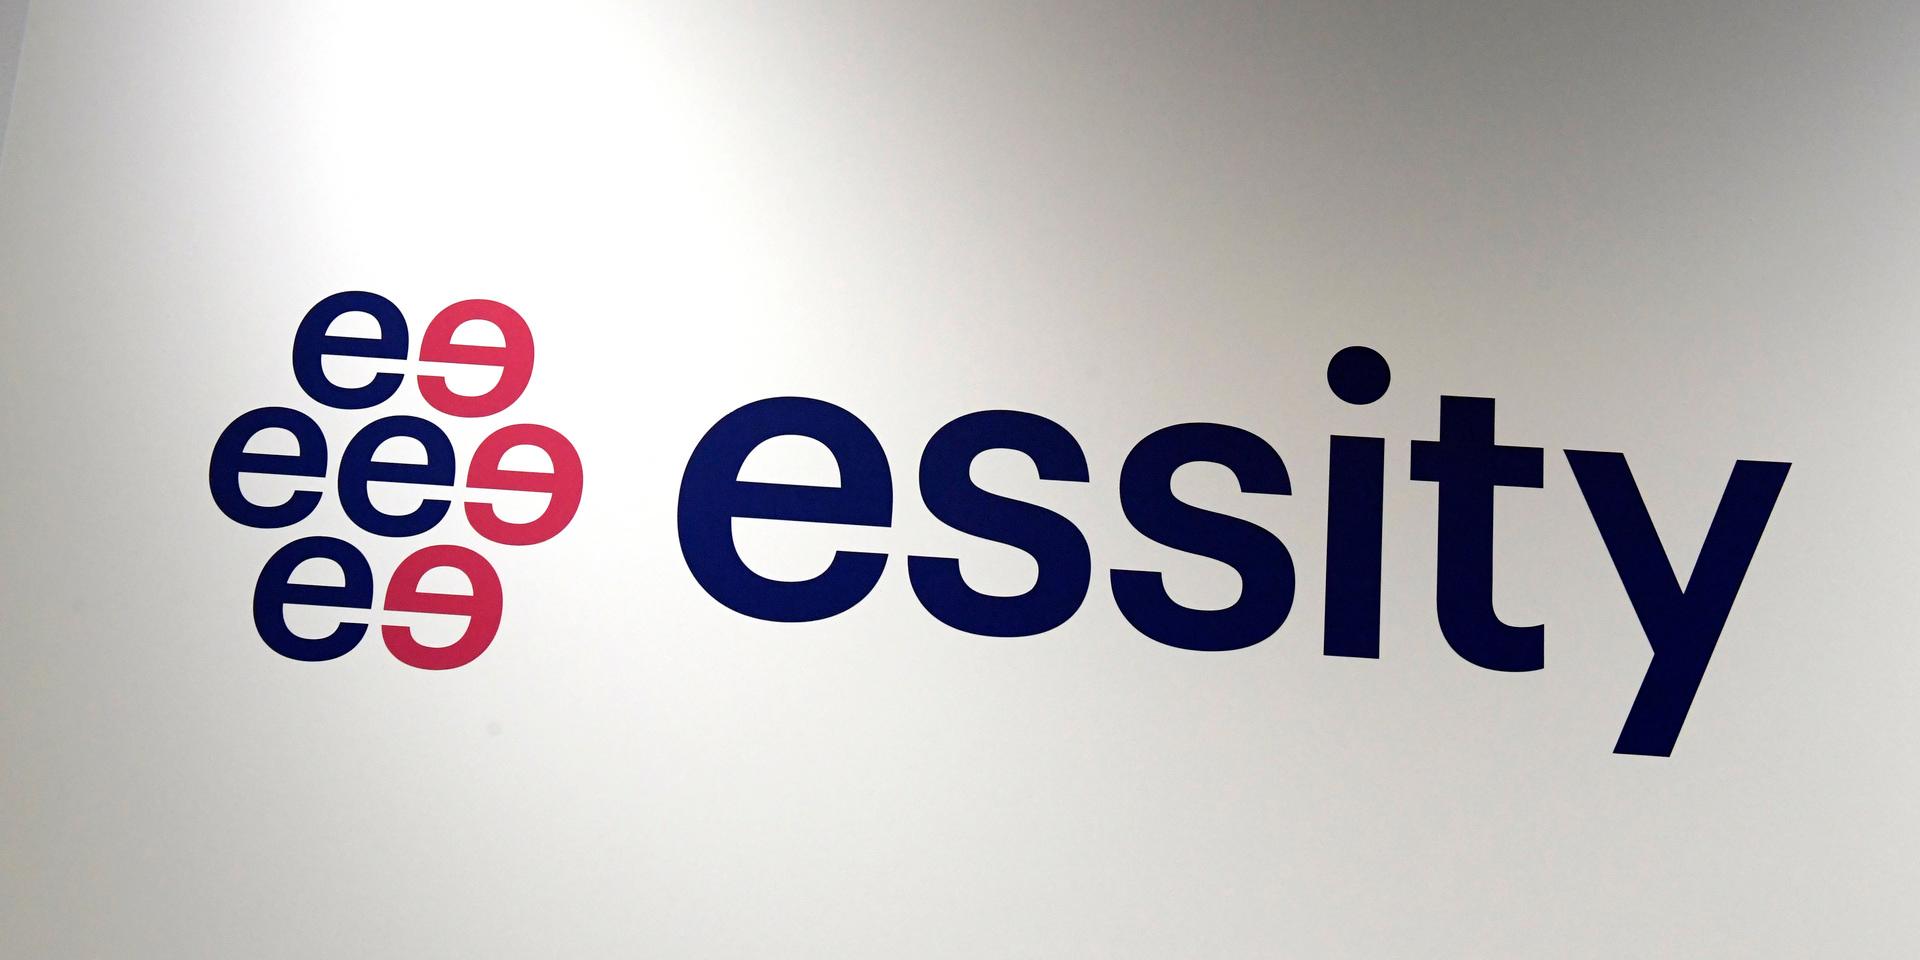 Som en följd av kriget i Ukraina har hygienbolaget Essity tagit beslutet att stänga ner all försäljning och produktion i Ryssland.